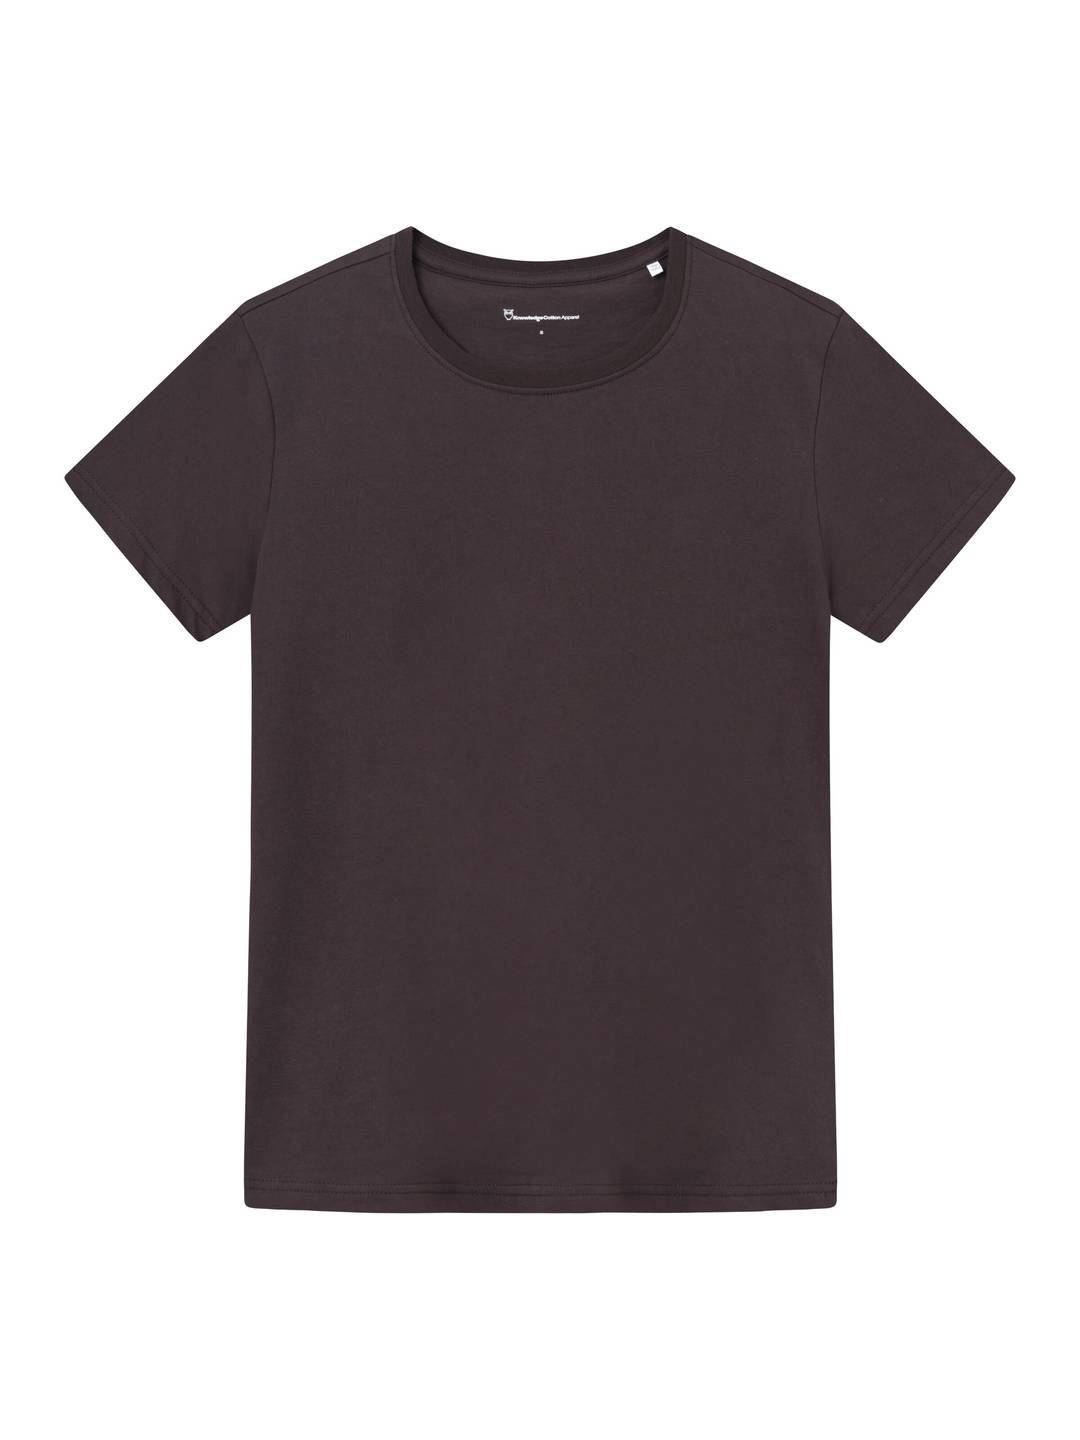 T-Shirt Basic chocolate plum von KnowledgeCotton Apparel